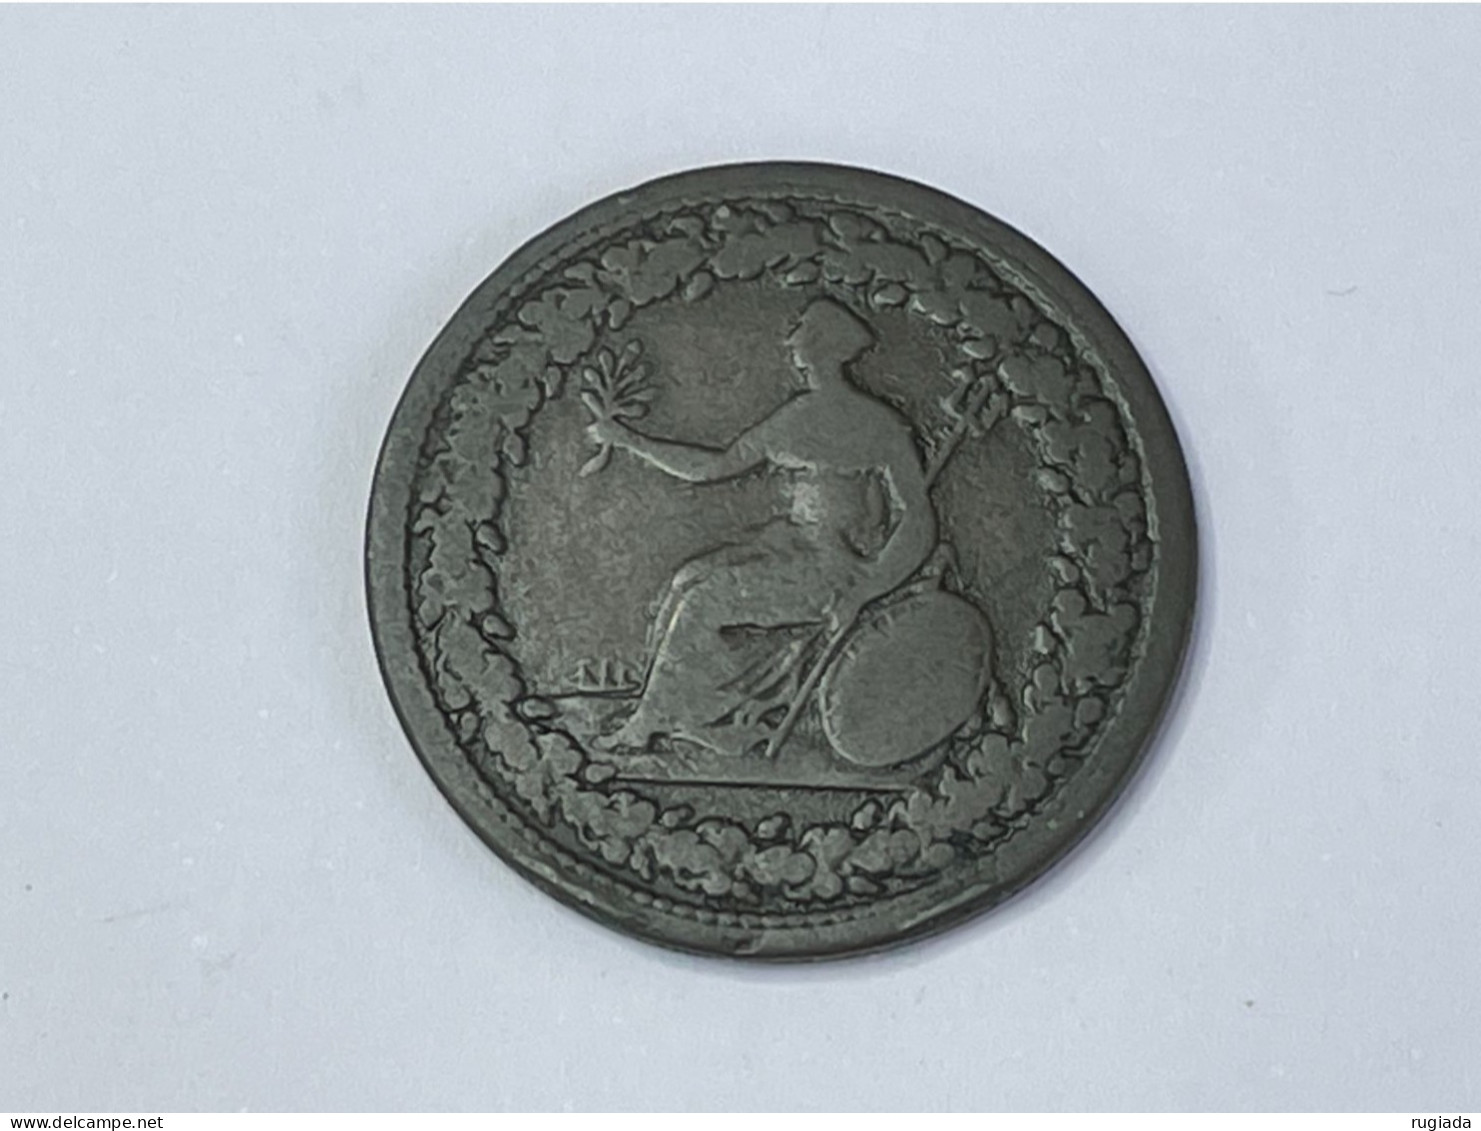 1813 Canada Provinces Eagle Britannia 1/2 Half Penny, VG Very Good - Canada